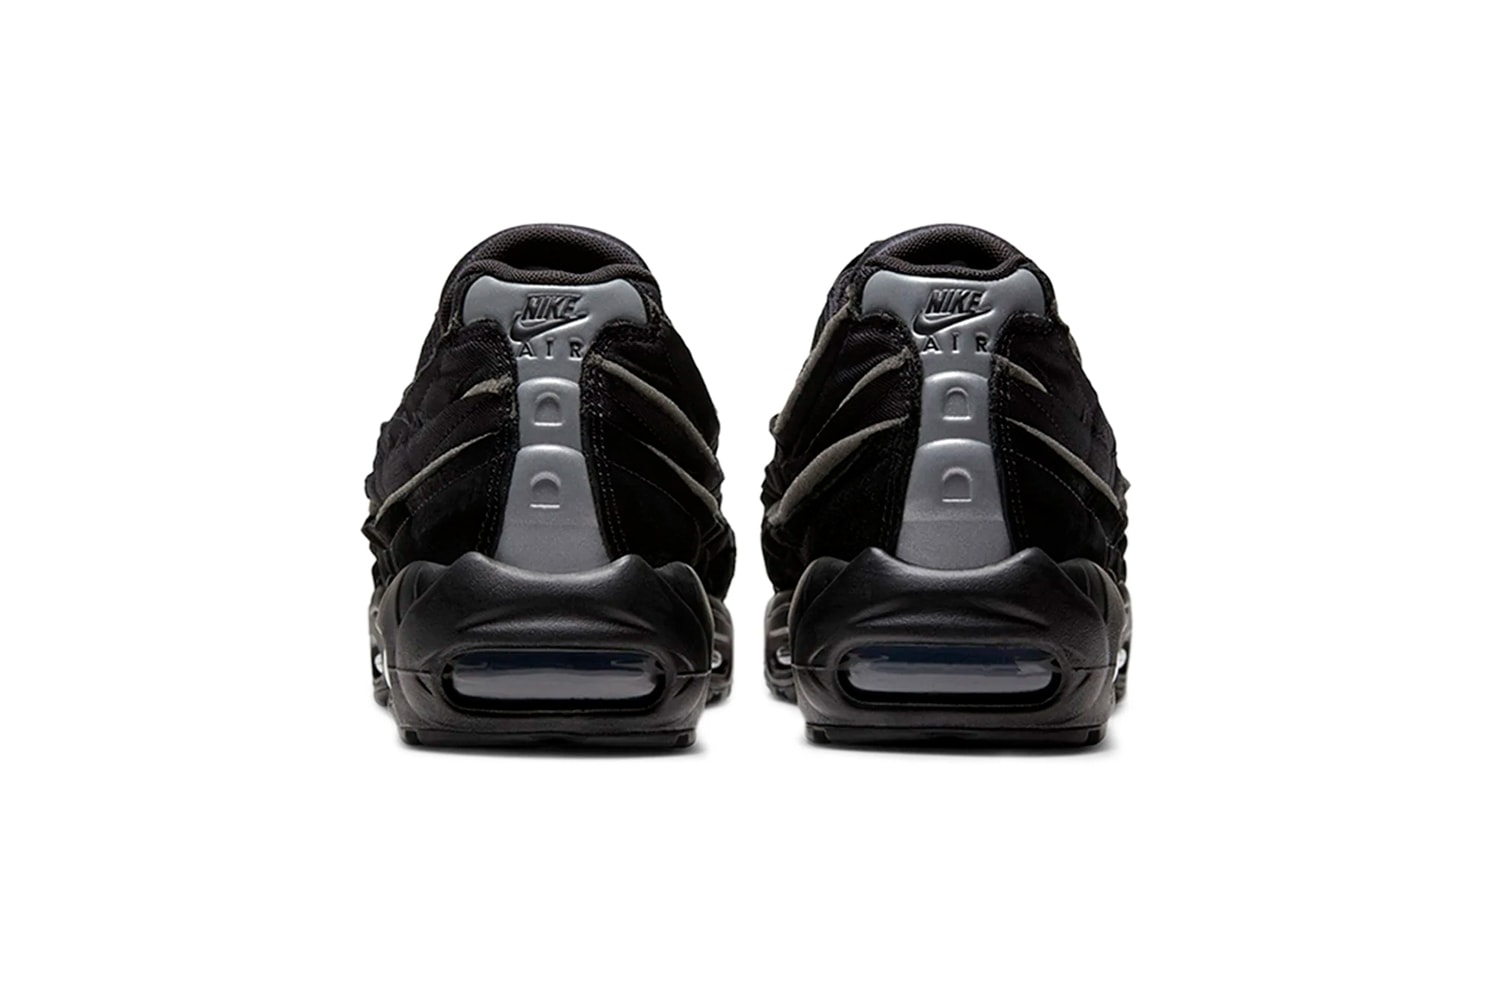 COMME des GARÇONS HOMME PLUS x Nike Air Max 95 Release | Hypebeast